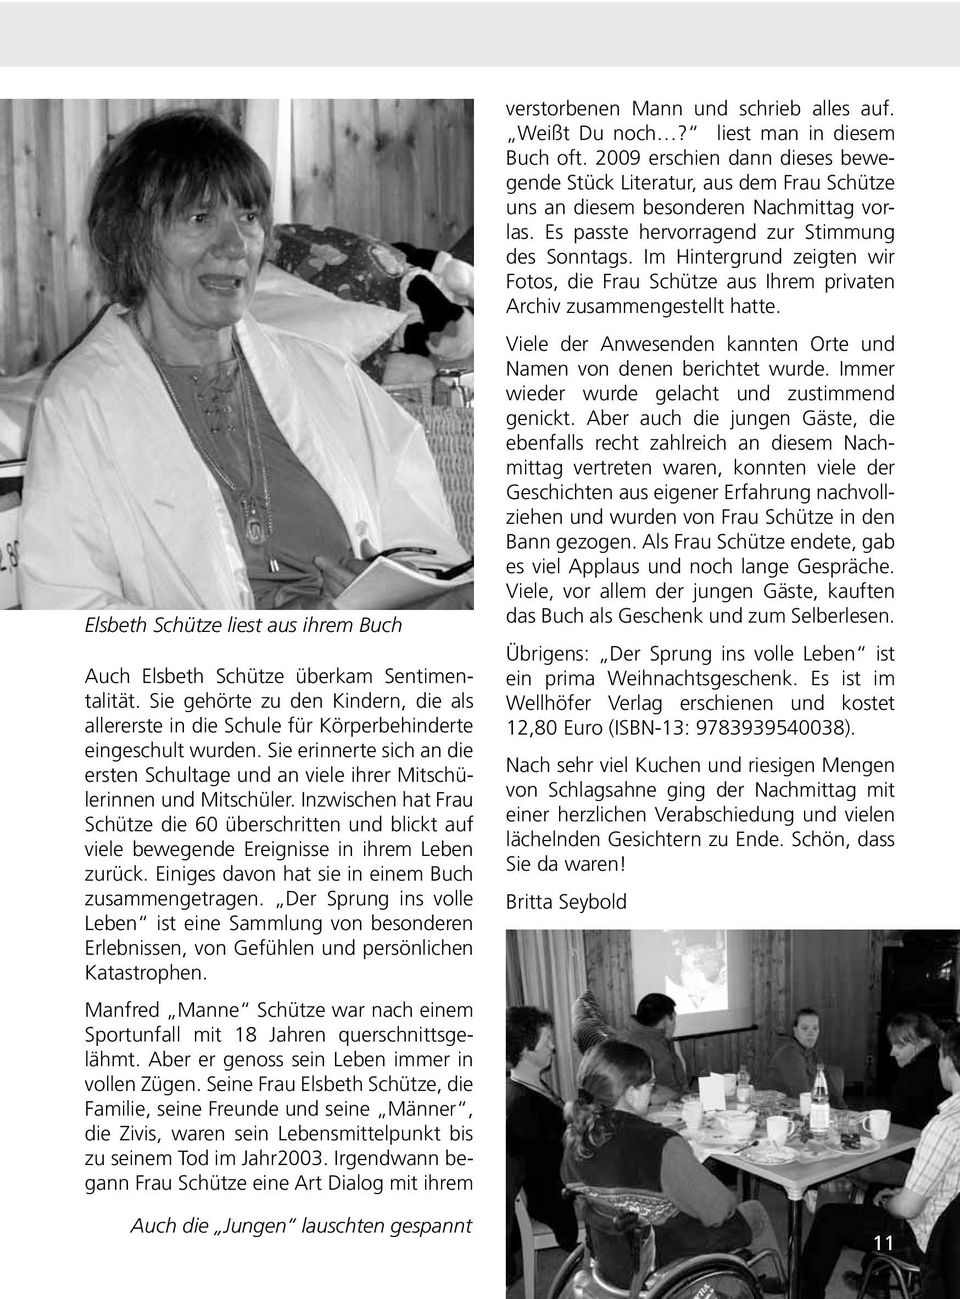 Inzwischen hat Frau Schütze die 60 überschritten und blickt auf viele bewegende Ereignisse in ihrem Leben zurück. Einiges davon hat sie in einem Buch zusammengetragen.